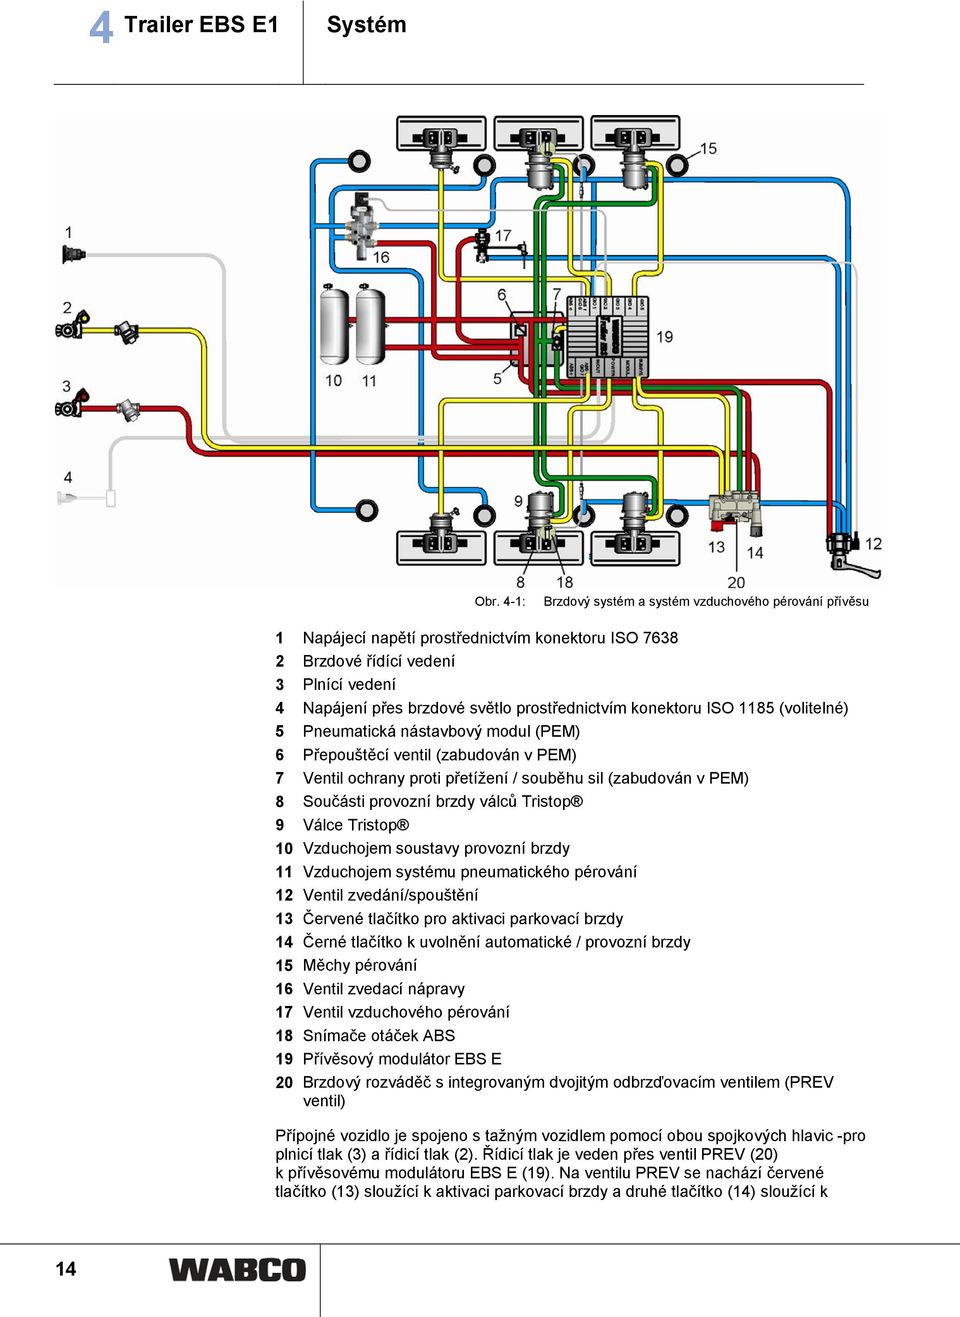 konektoru ISO 1185 (volitelné) 5 Pneumatická nástavbový modul (PEM) 6 Přepouštěcí ventil (zabudován v PEM) 7 Ventil ochrany proti přetížení / souběhu sil (zabudován v PEM) 8 Součásti provozní brzdy